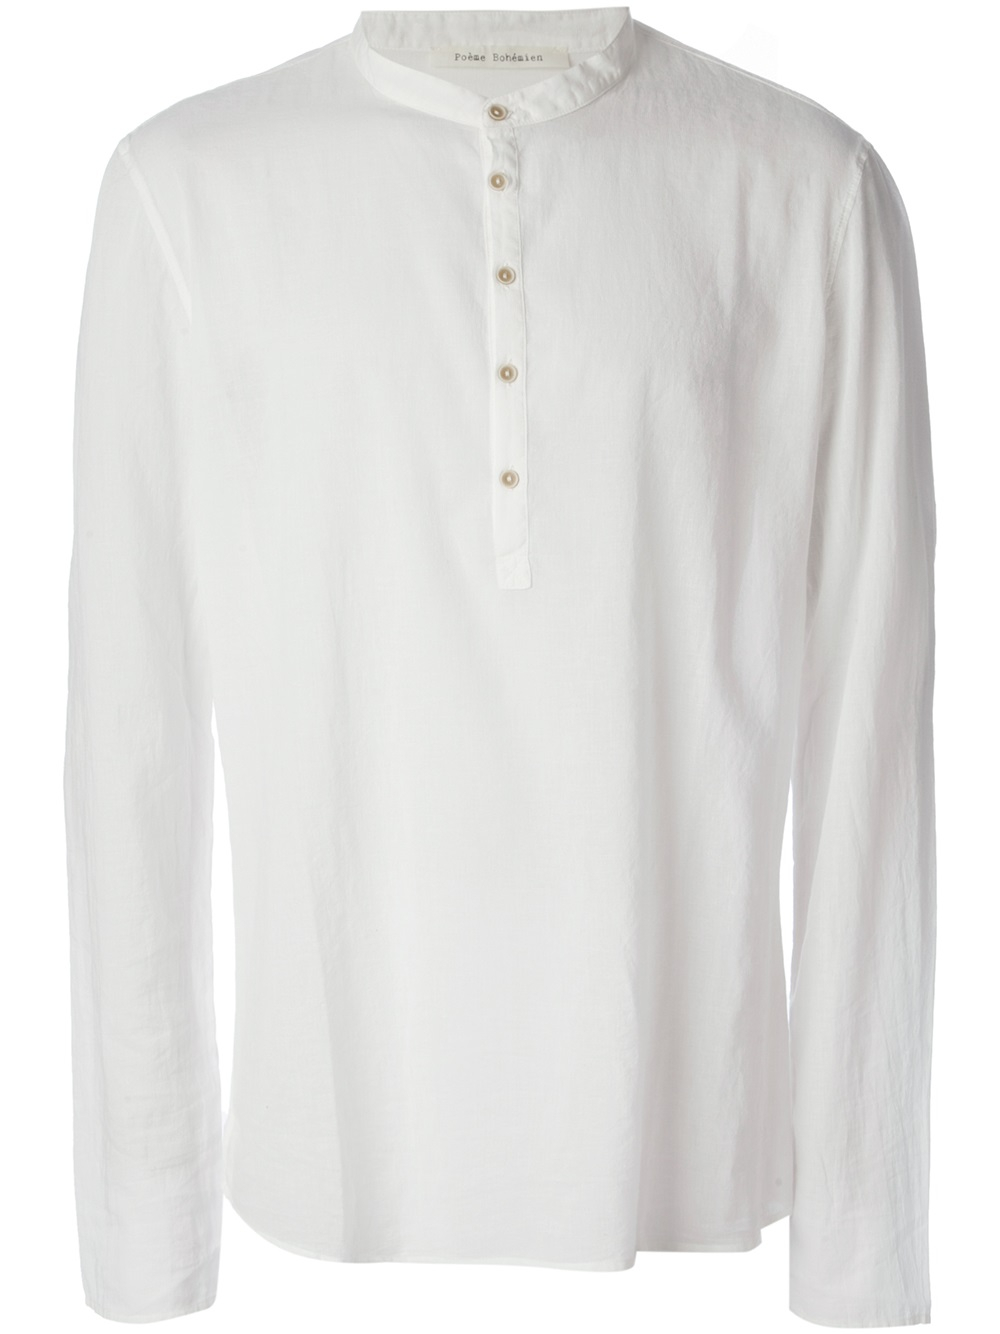 Lyst - Poeme Bohemien Kaftan Style Shirt in White for Men